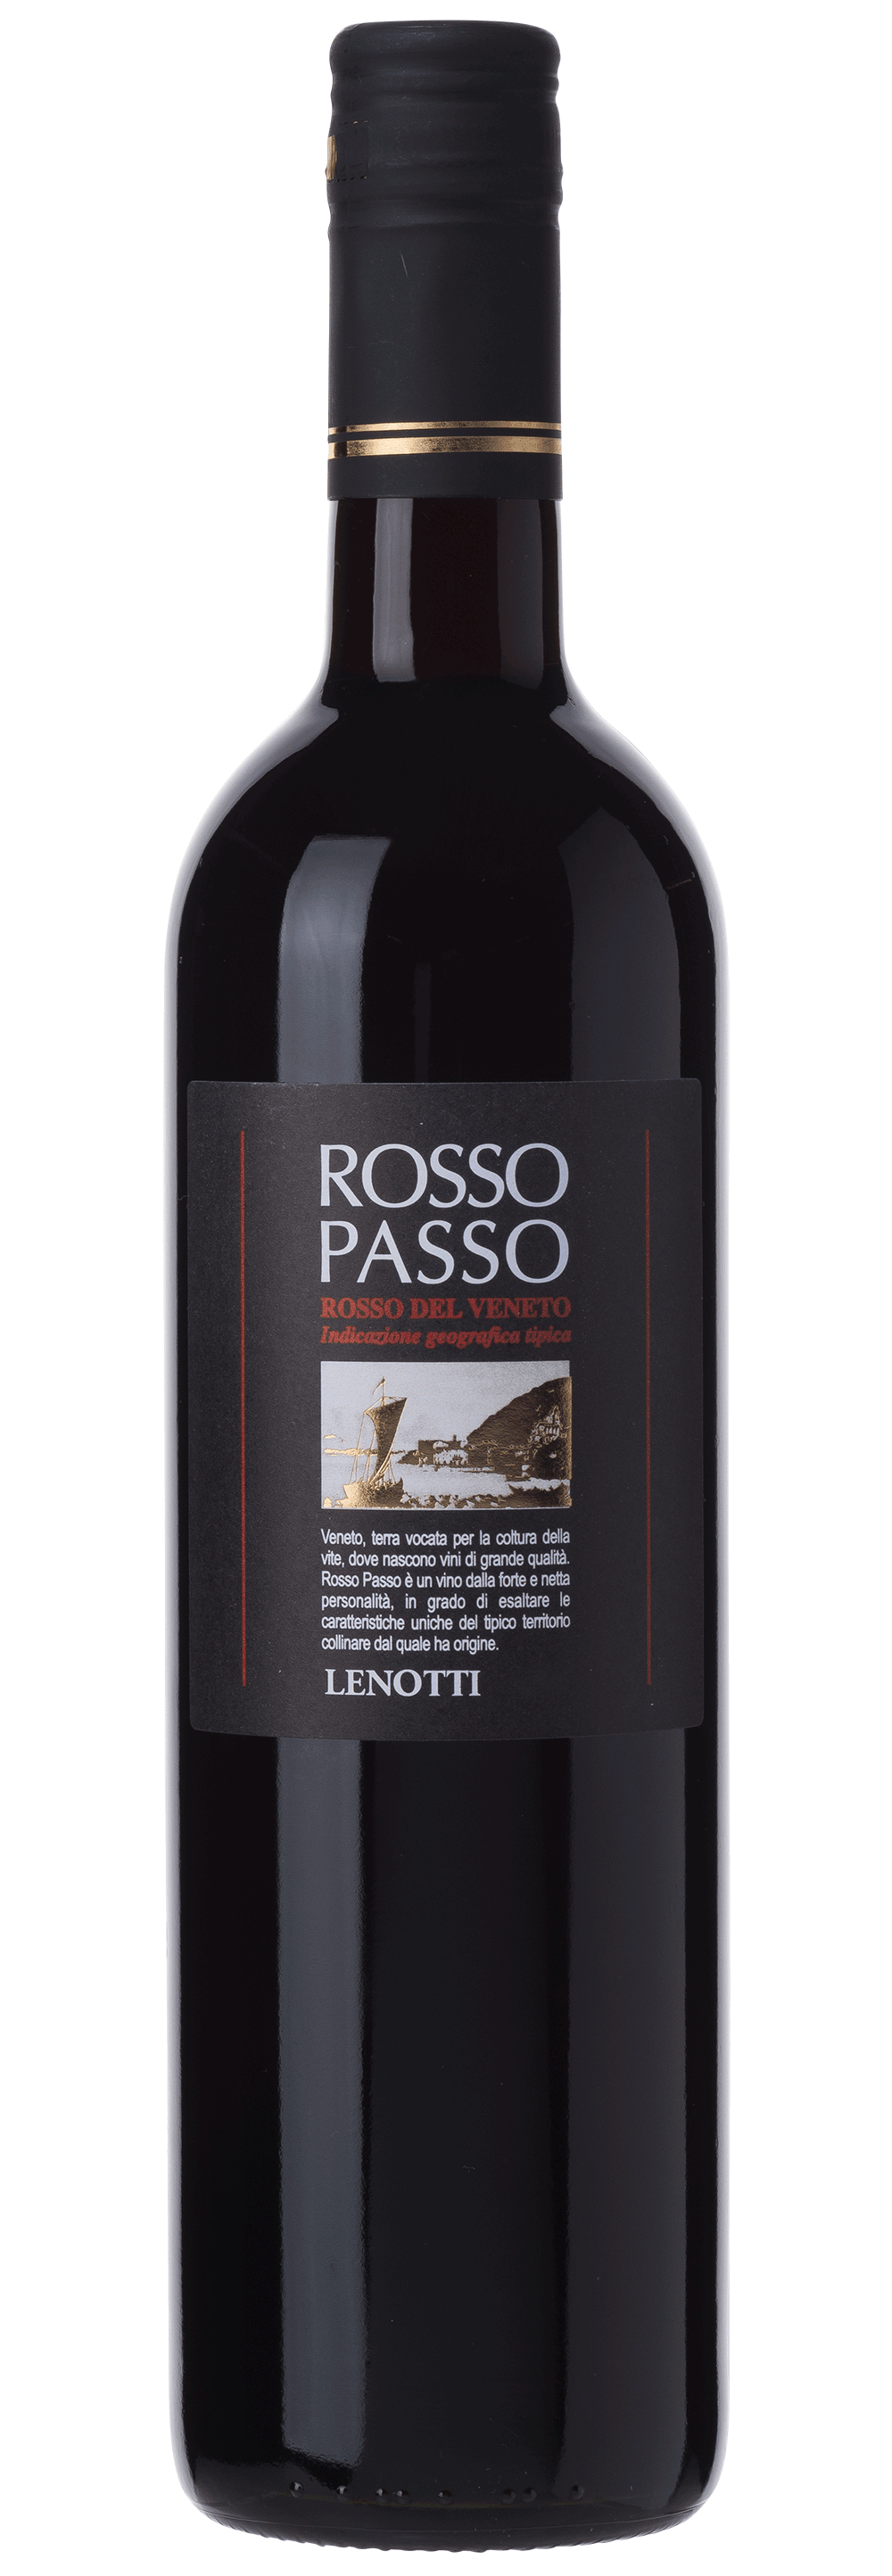 Rosso Passo - Lenotti | viDeli - einfach guter Wein